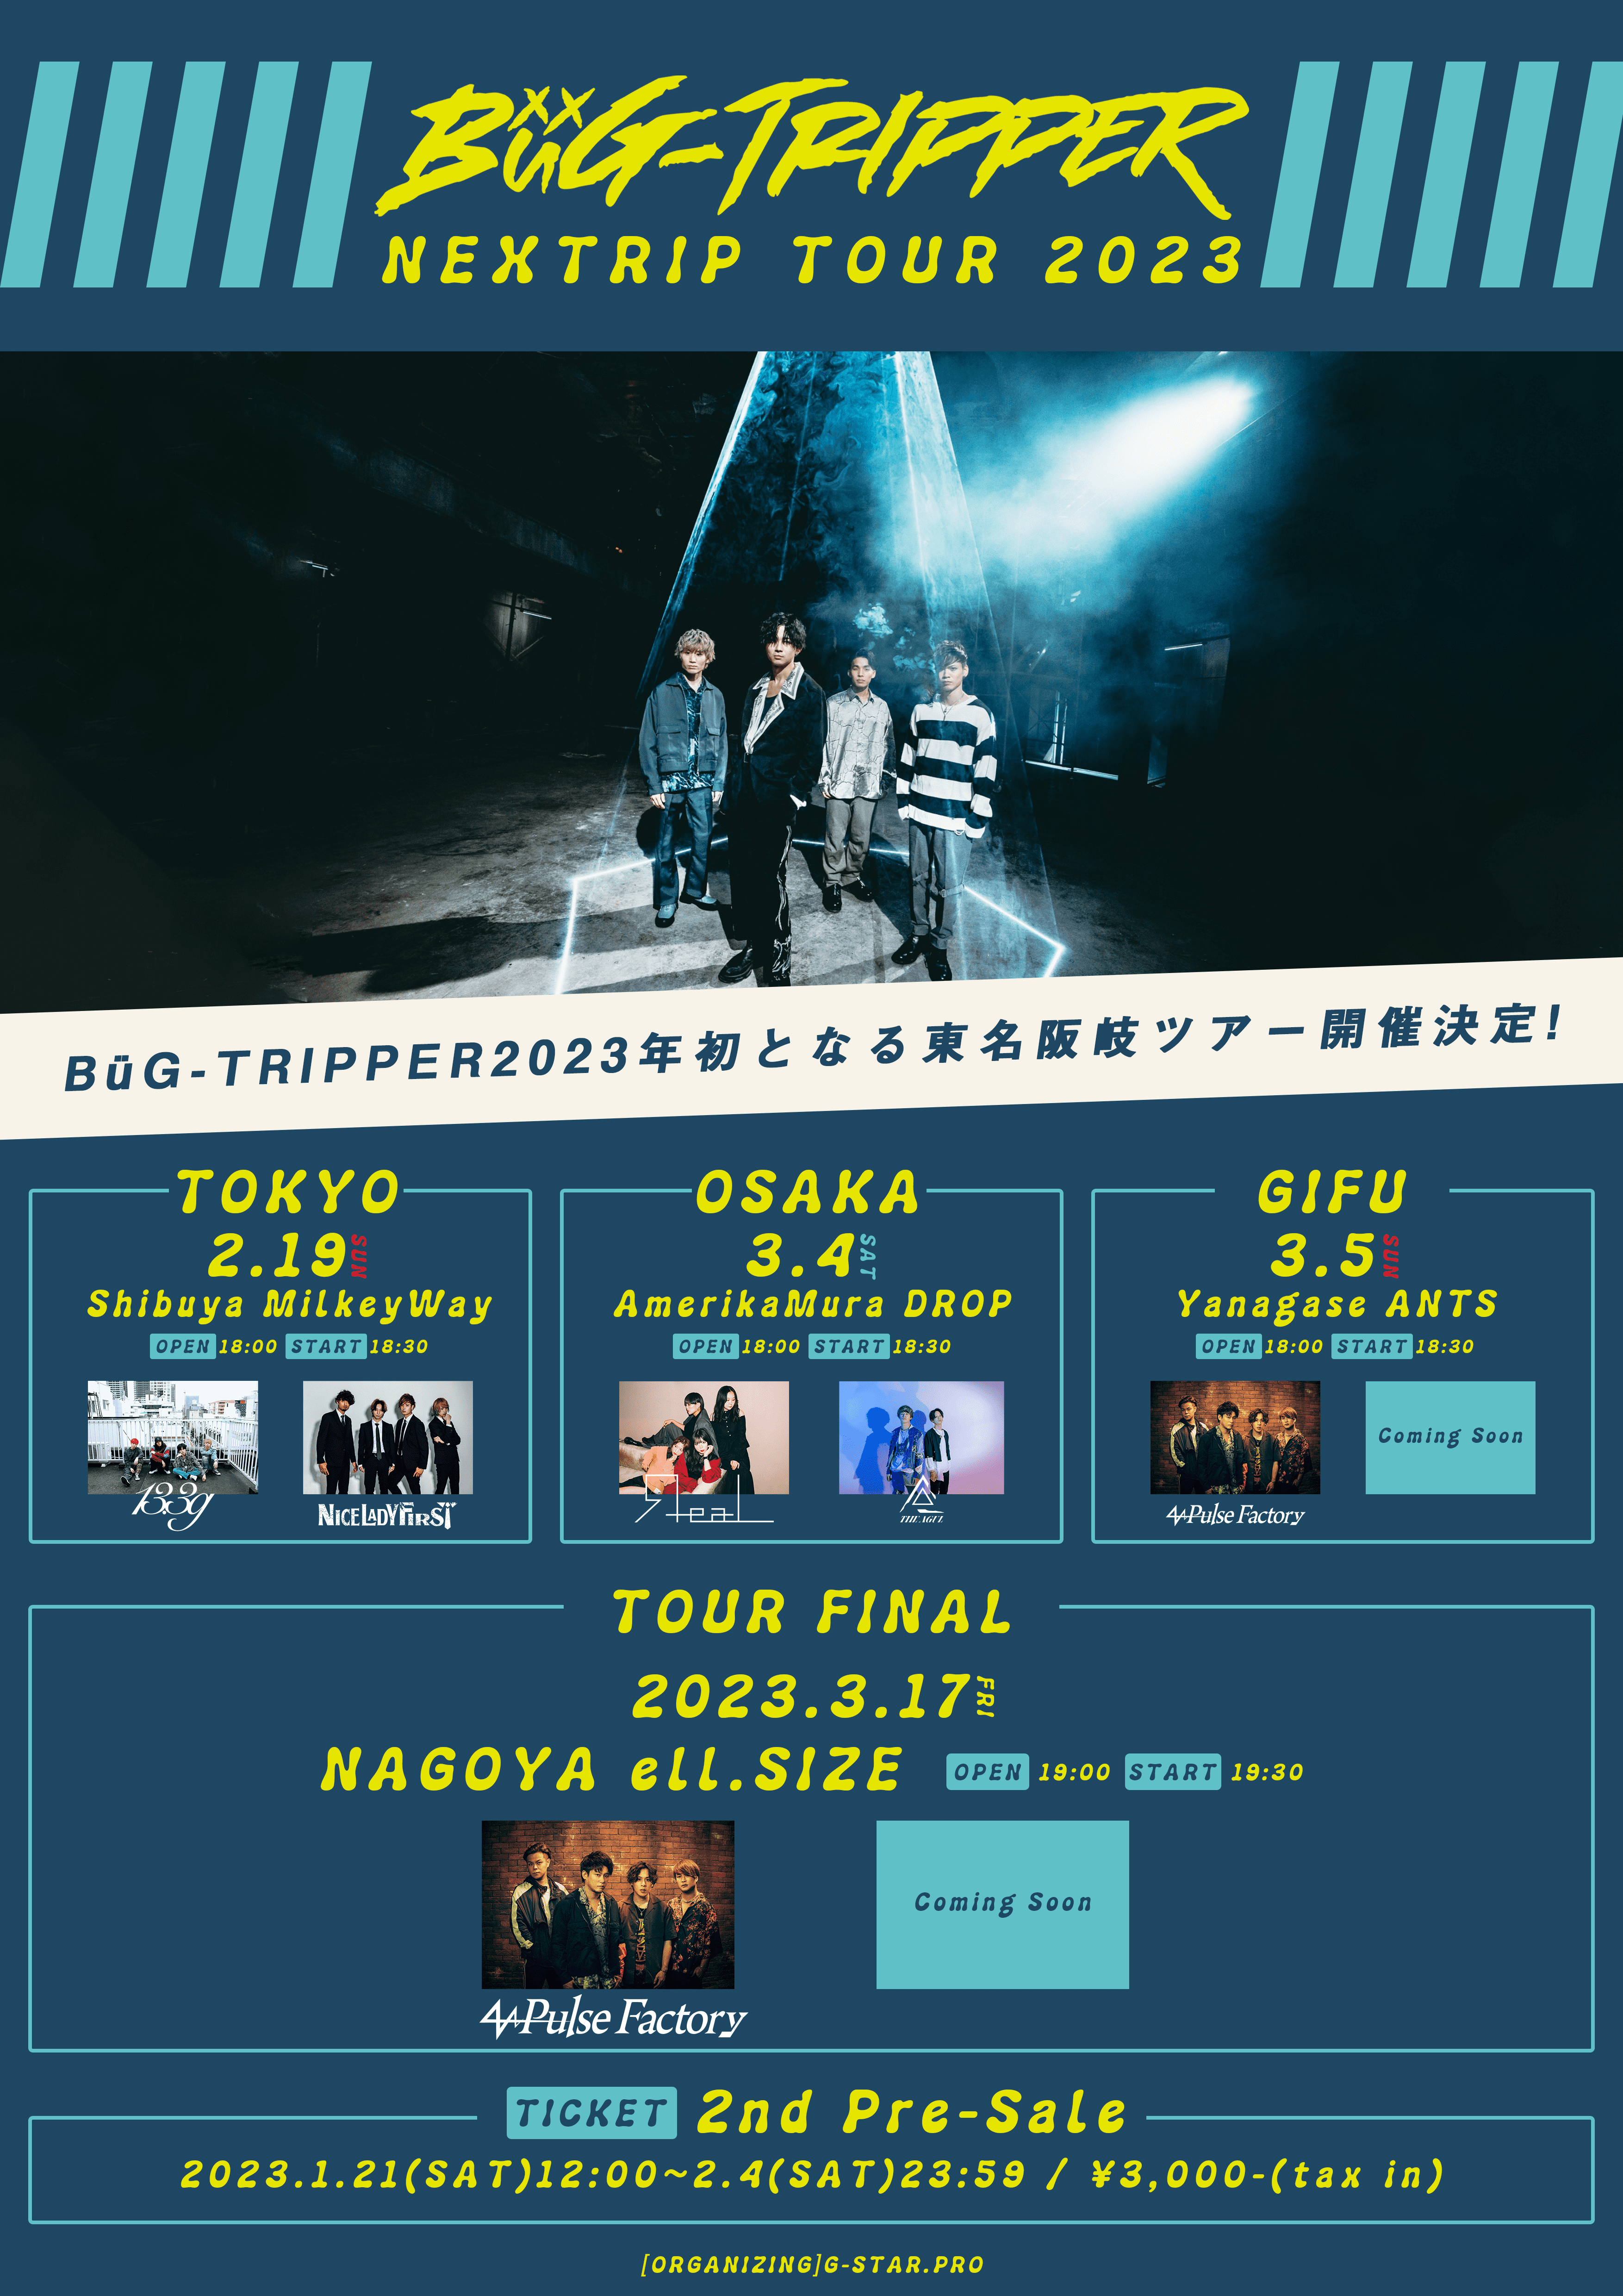 【2次先行】BüG-TRIPPER NEXTRIP TOUR 2023 [岐阜公演]